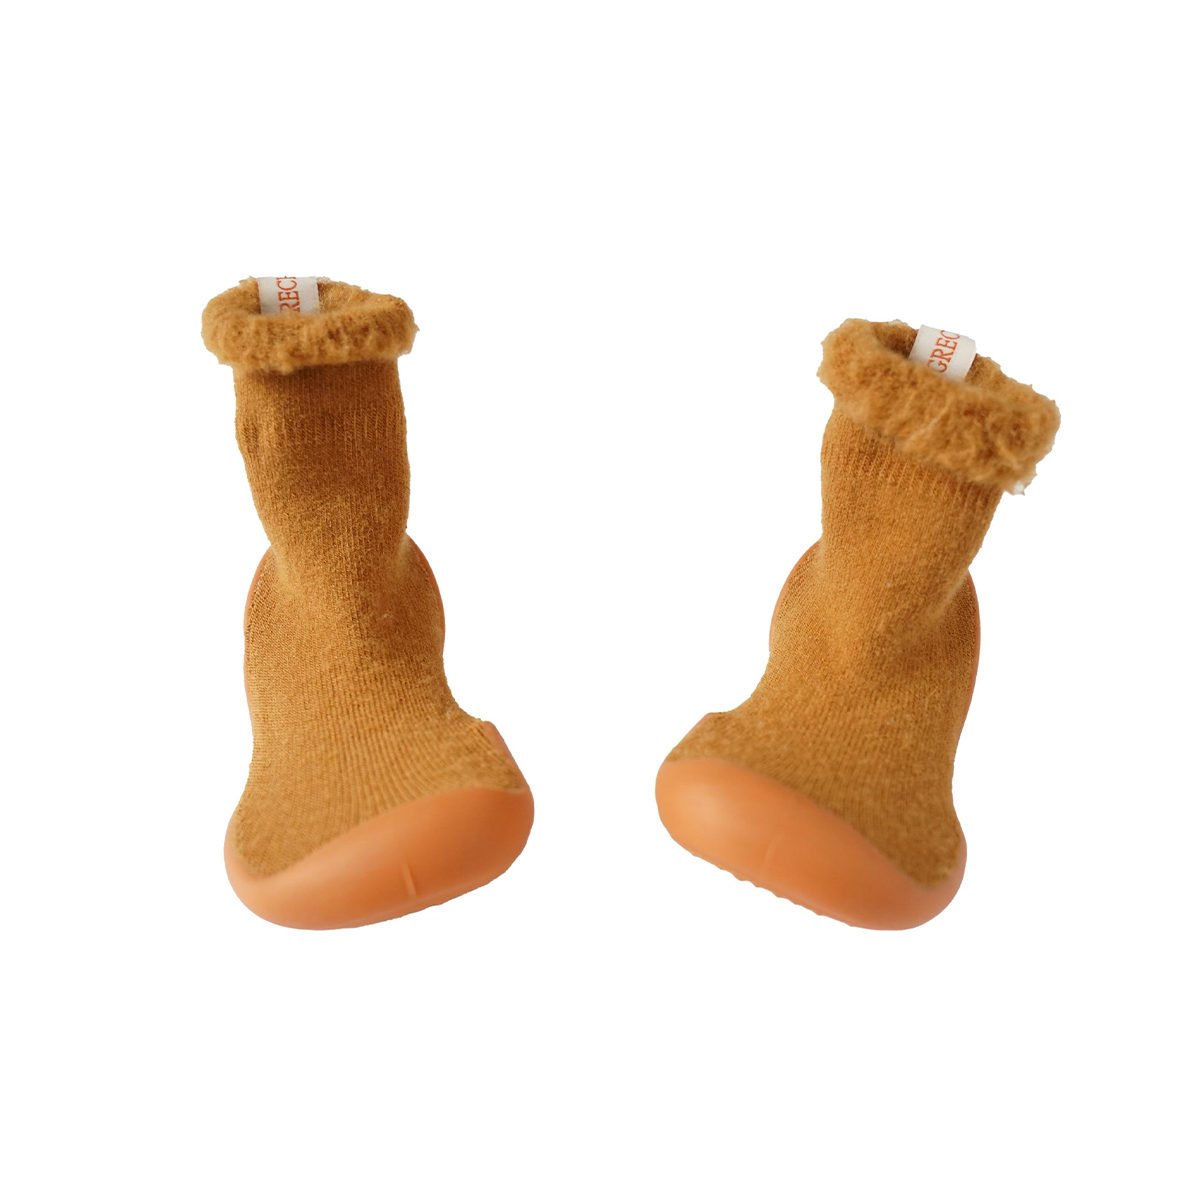 Met de leuke soksloffen van Grech & Co. in de kleur Sienna heb je de warmte en zachtheid van sokken, maar de stevigheid en grip van een paar schoenen. Ideaal voor jouw kindje op binnenshuis te dragen! 